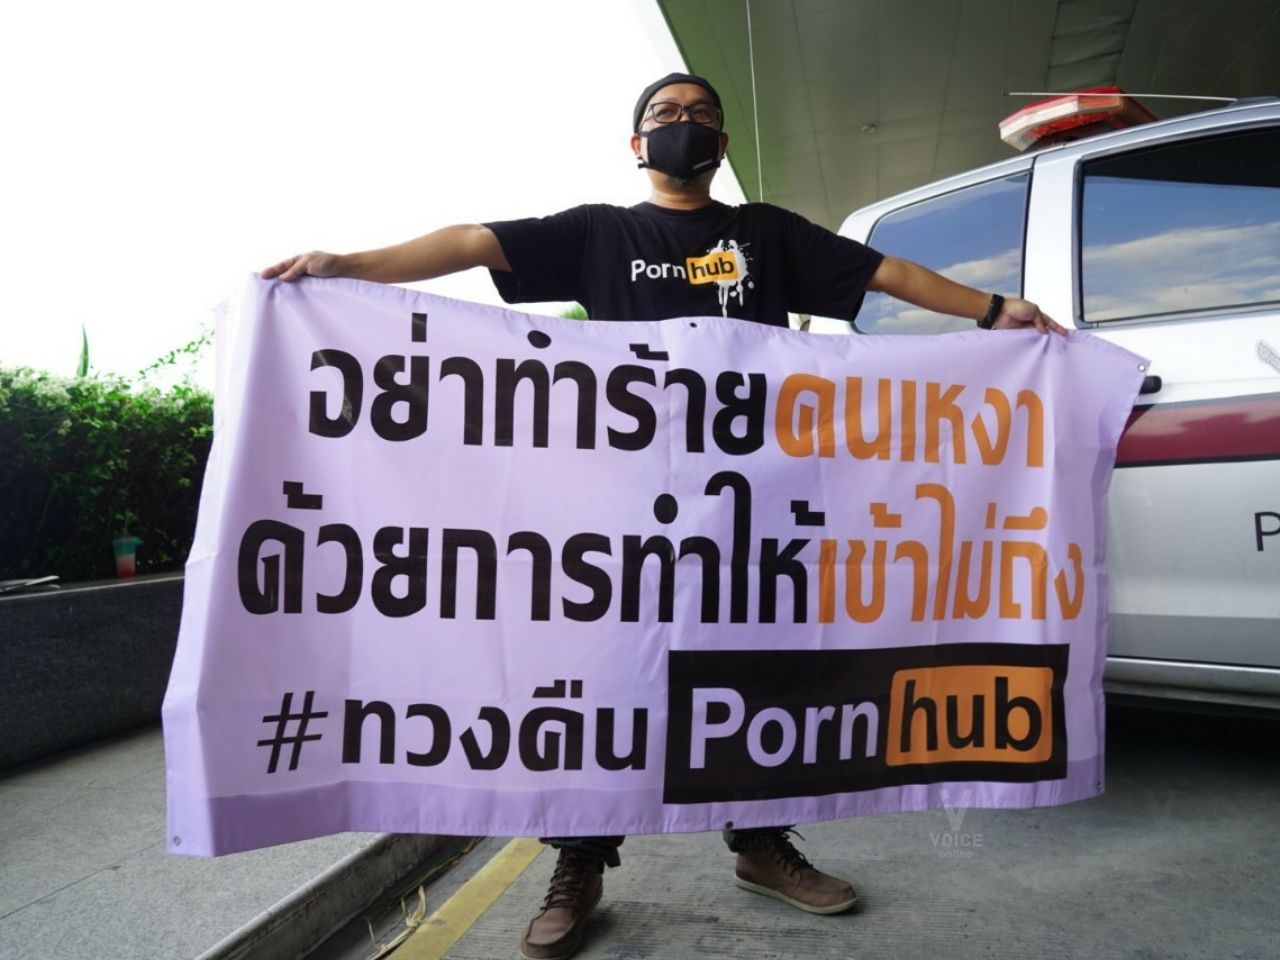 ม็อบ 3 พ.ย. ศูนย์ราชการ porn hub พอร์นฮับ